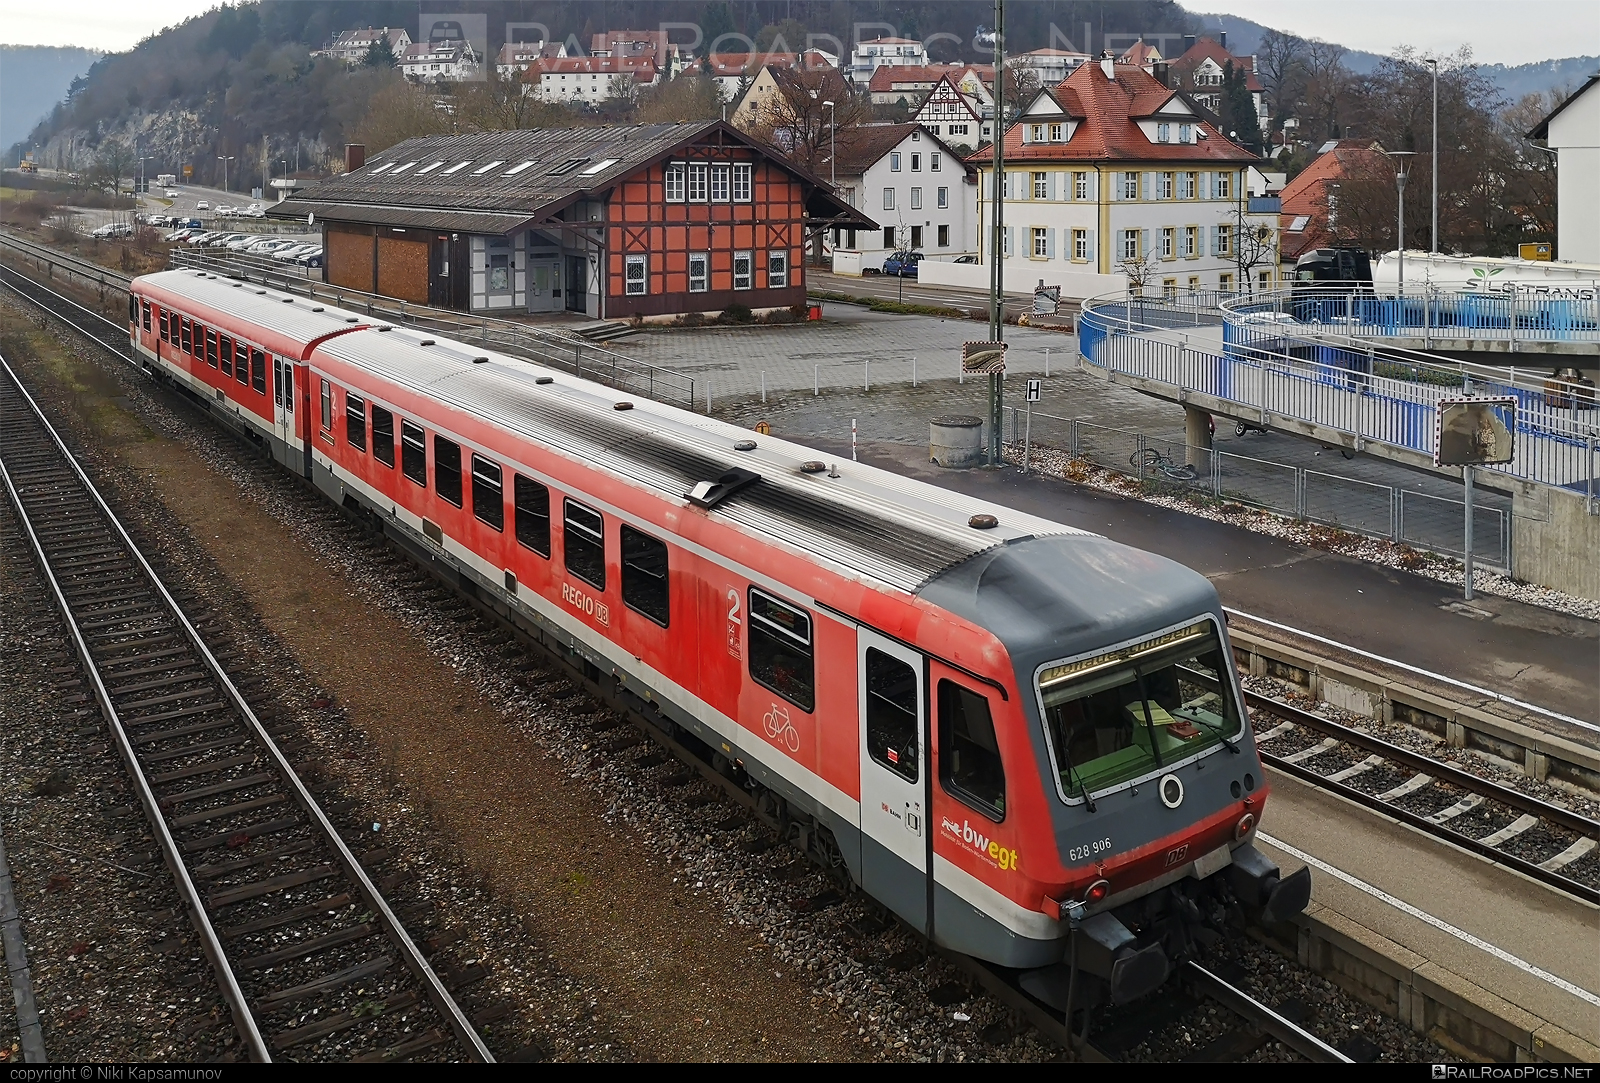 Düwag DB Class 628 - 628 906 operated by DB Regio AG #DBregio #DBregioAG #db #dbclass628 #deutschebahn #duewag #duewag628 #duwag #duwag628